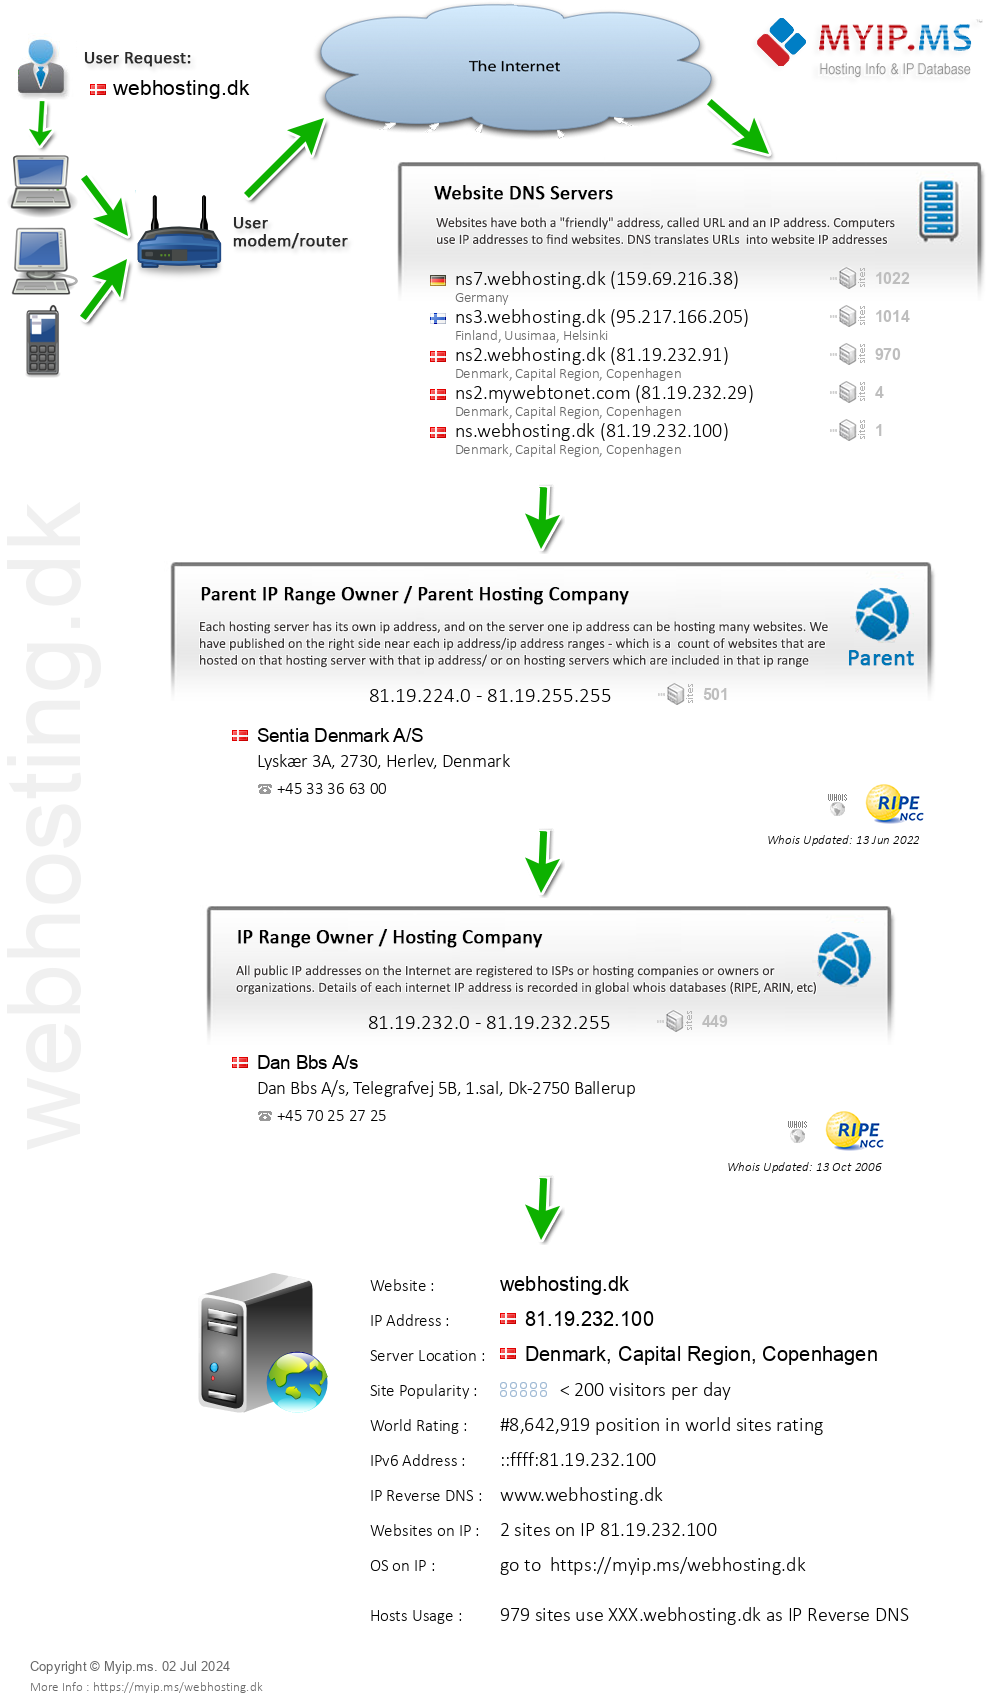 Webhosting.dk - Website Hosting Visual IP Diagram